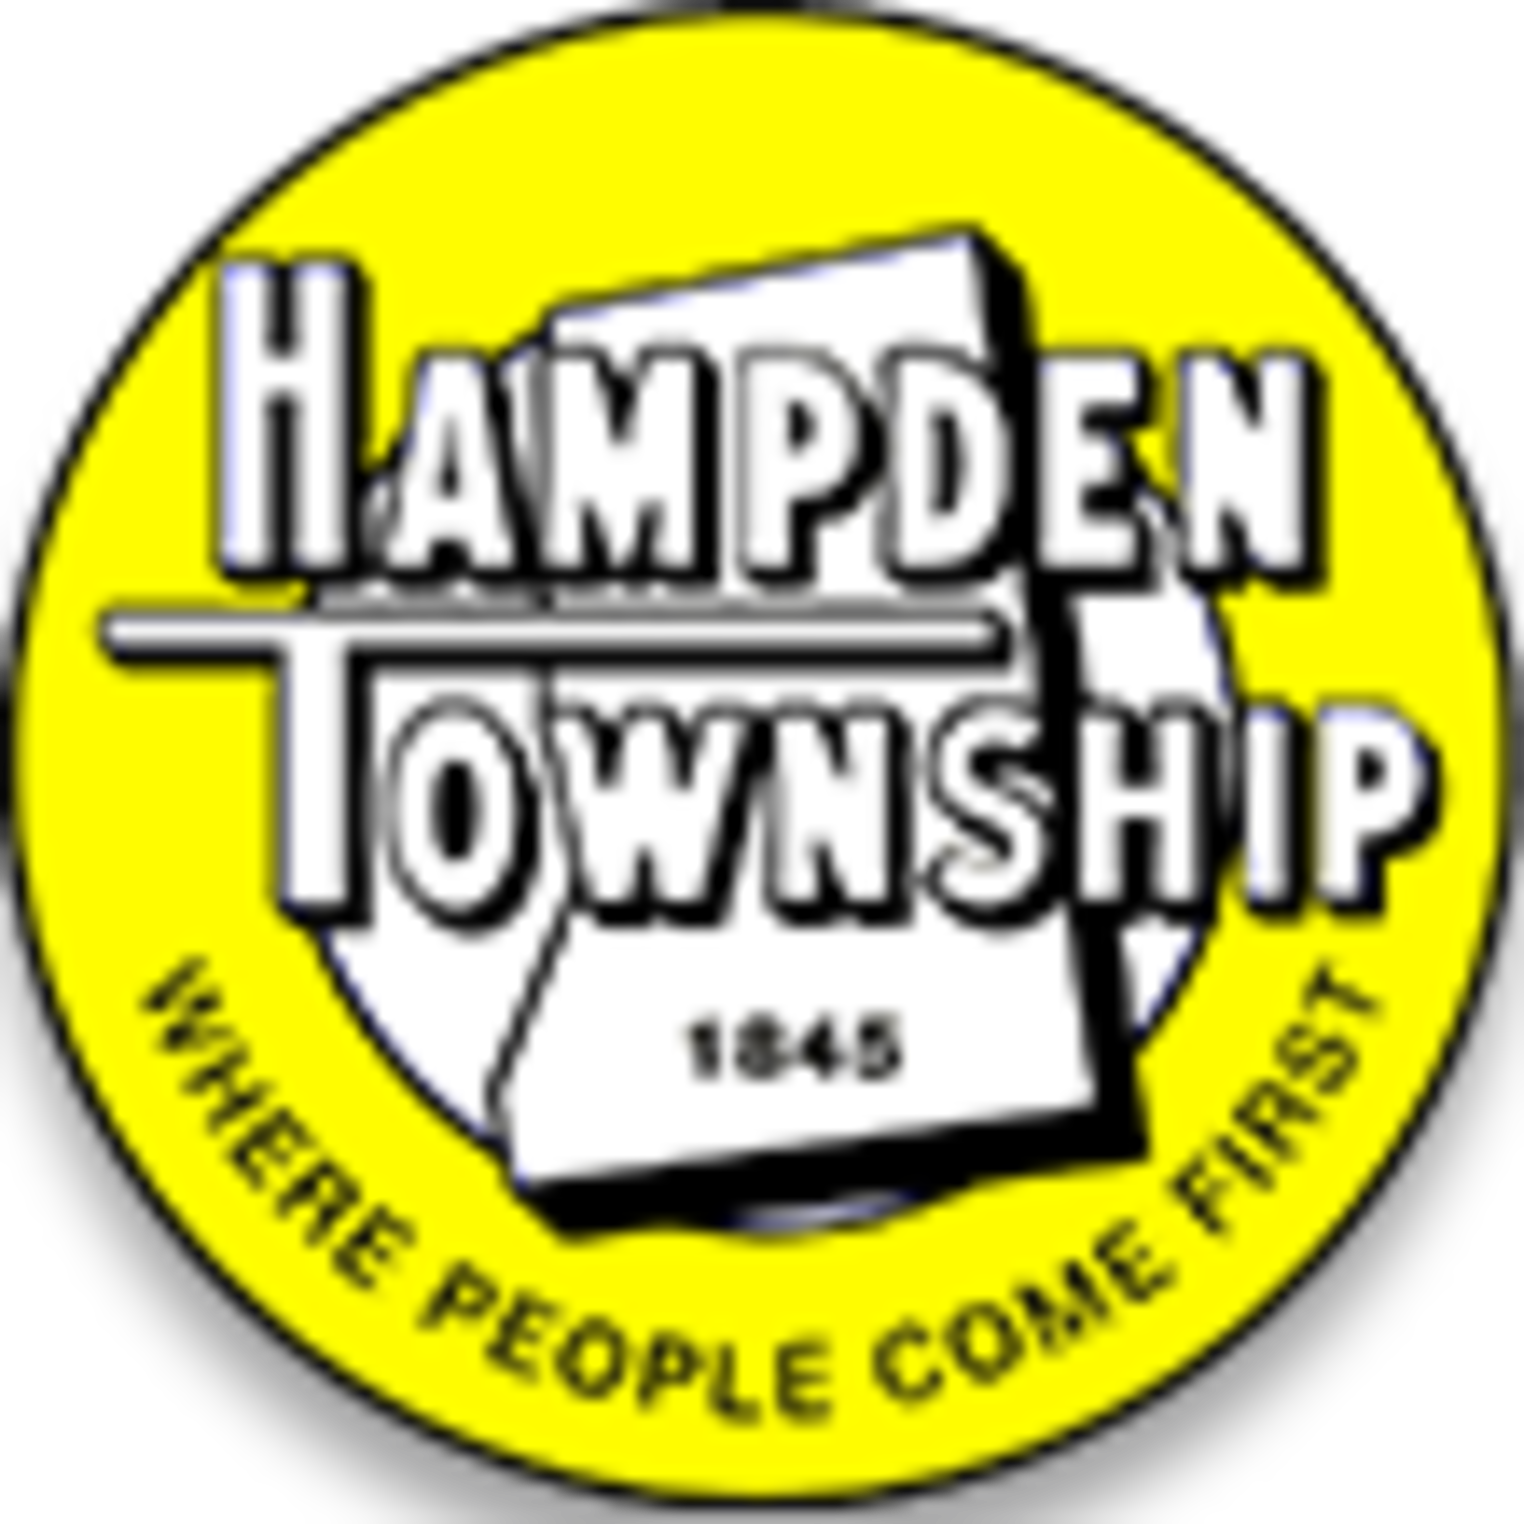 Hampden Township